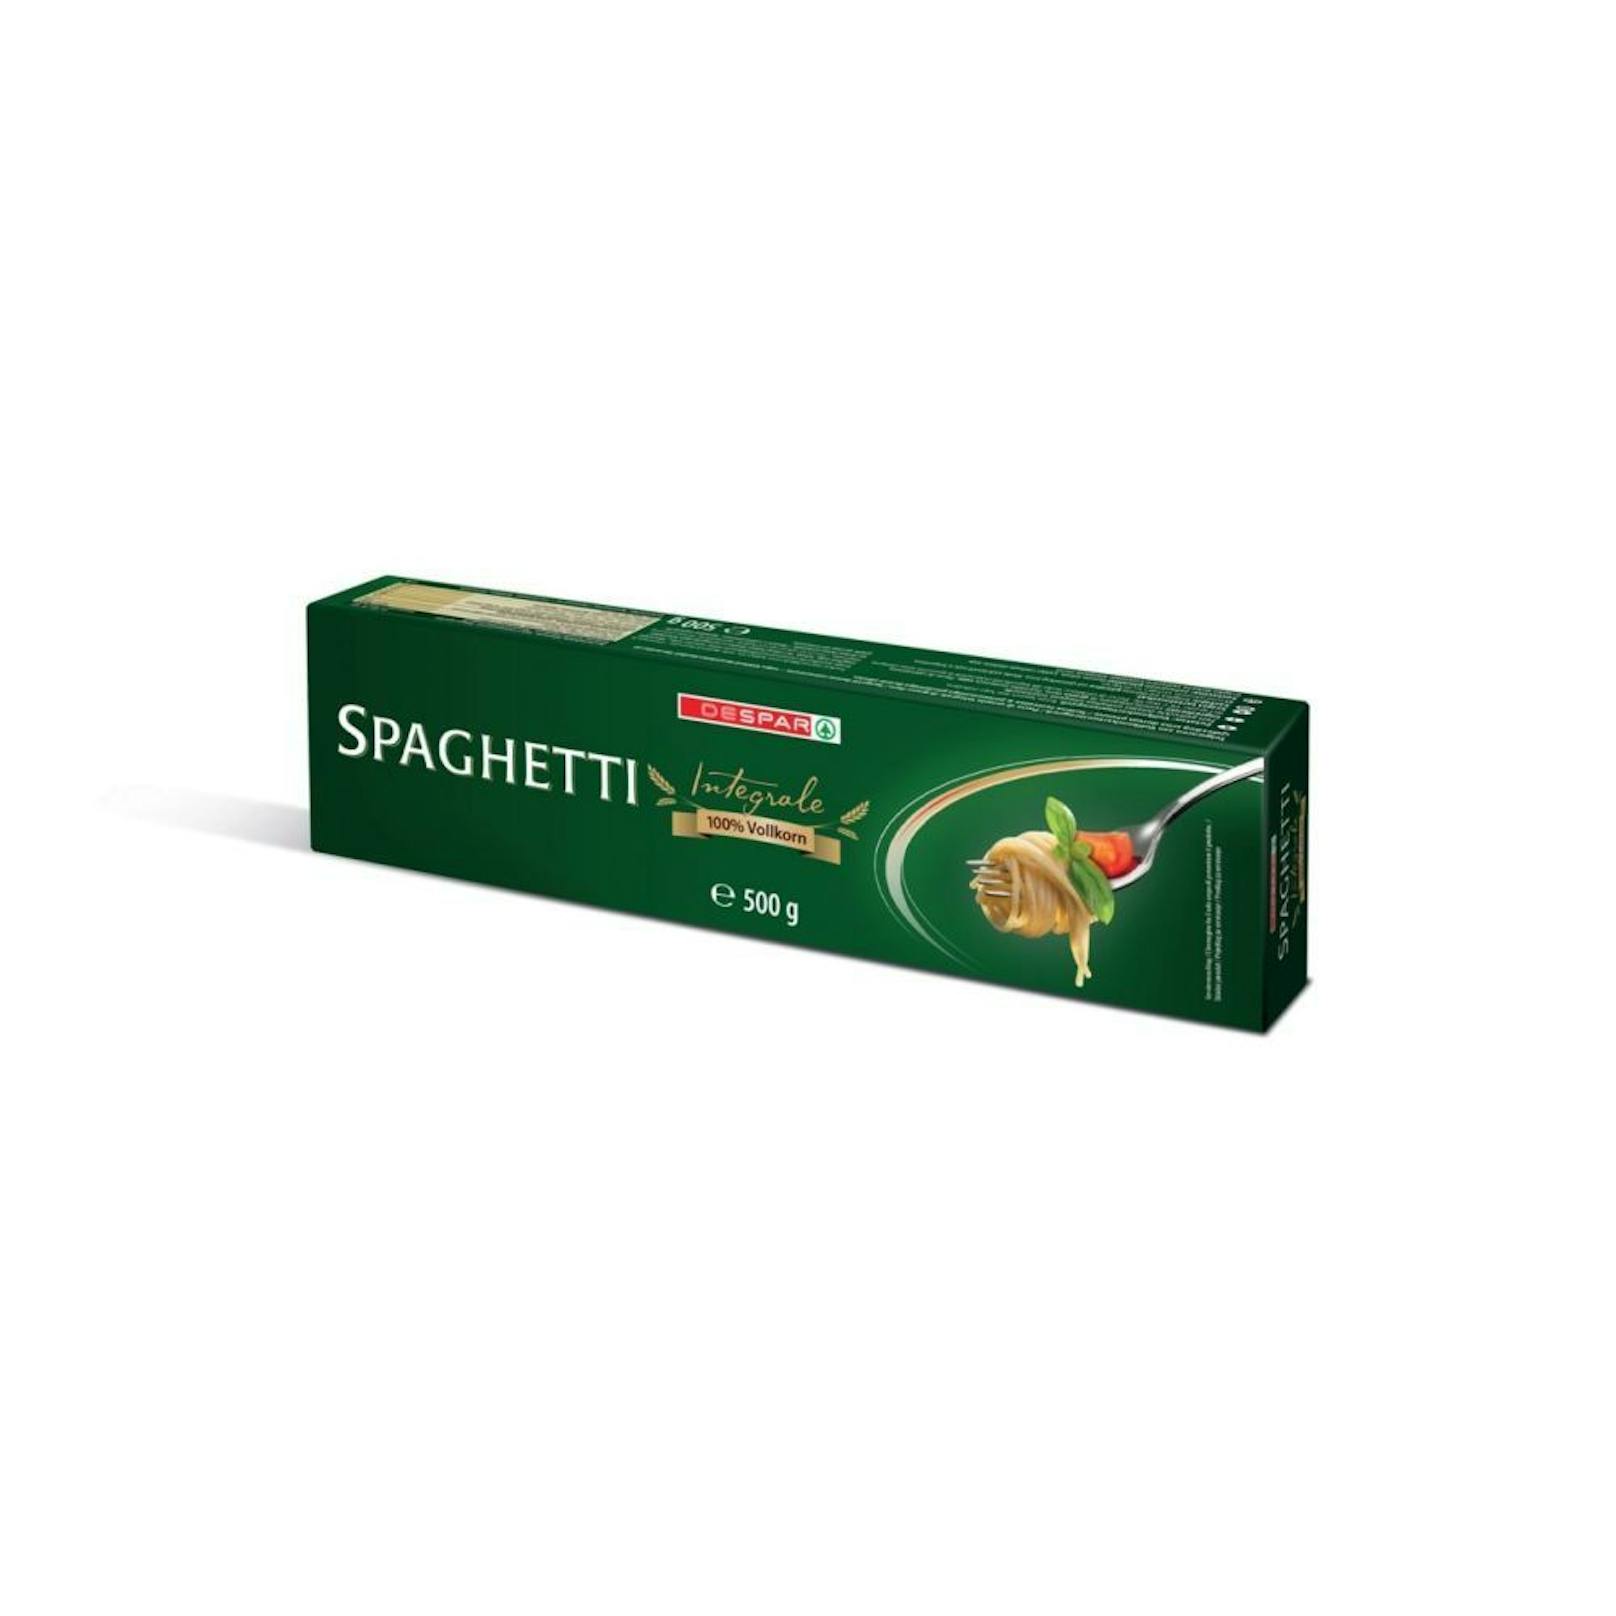 Die Spaghetti integrale von DESPAR wiesen Spuren des Schimmelpilzgiftes Deoxynivalenol auf, überschritt damit jedoch nicht den gesetzlich erlaubten Grenzwert. Außerdem wurden minimale Spuren von des Pestizids Piperonylbutoxid gefunden. Dafür gibt es in der EU keinen geregelten Grenzwert.